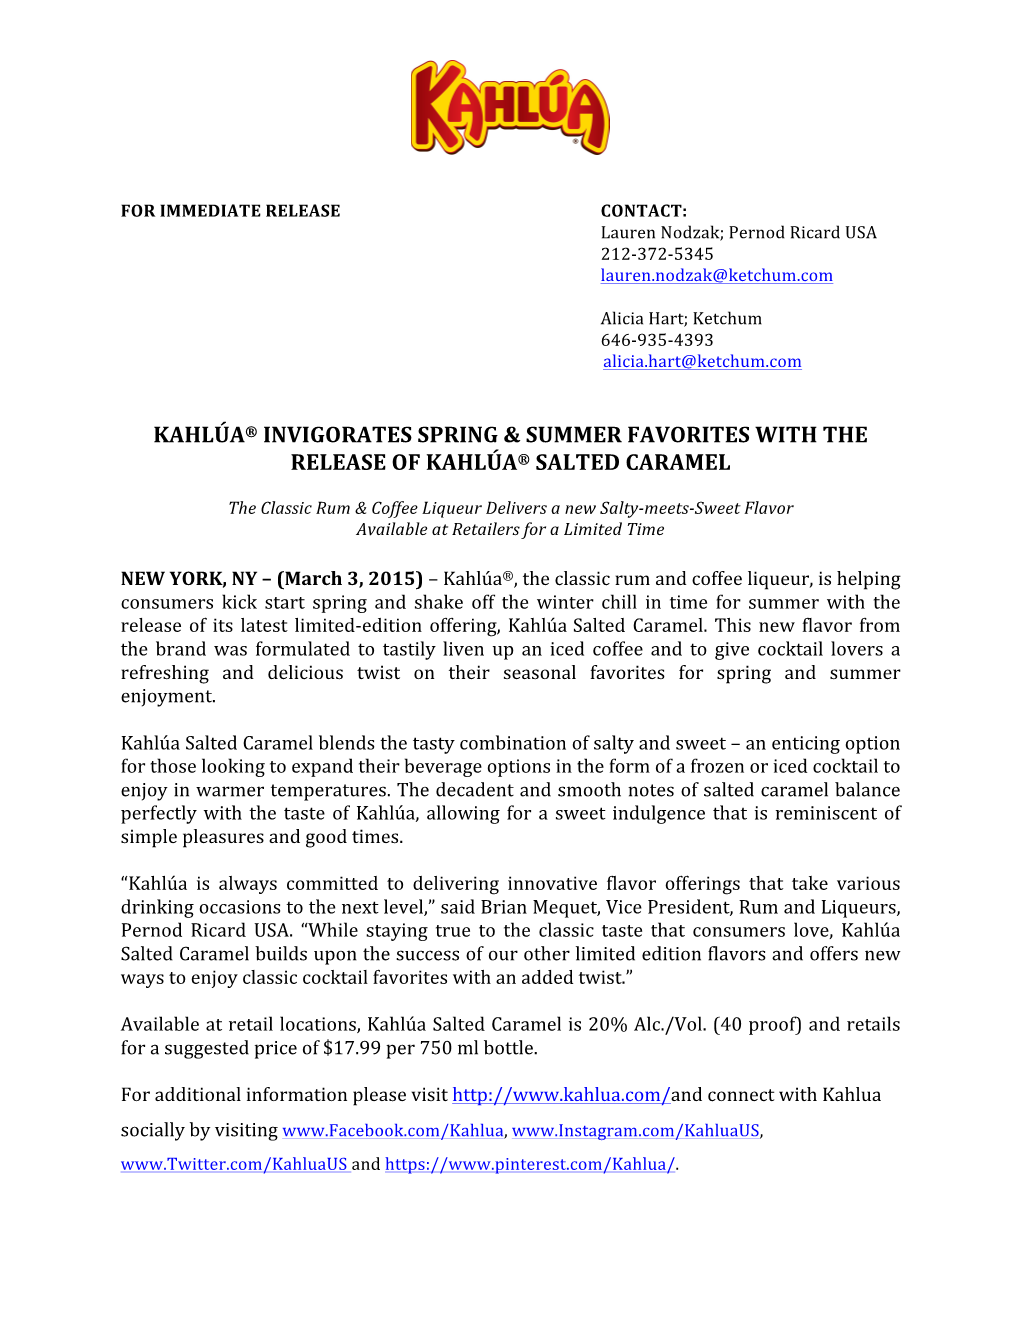 Kahlua Salted Caramel Release FINAL[1]